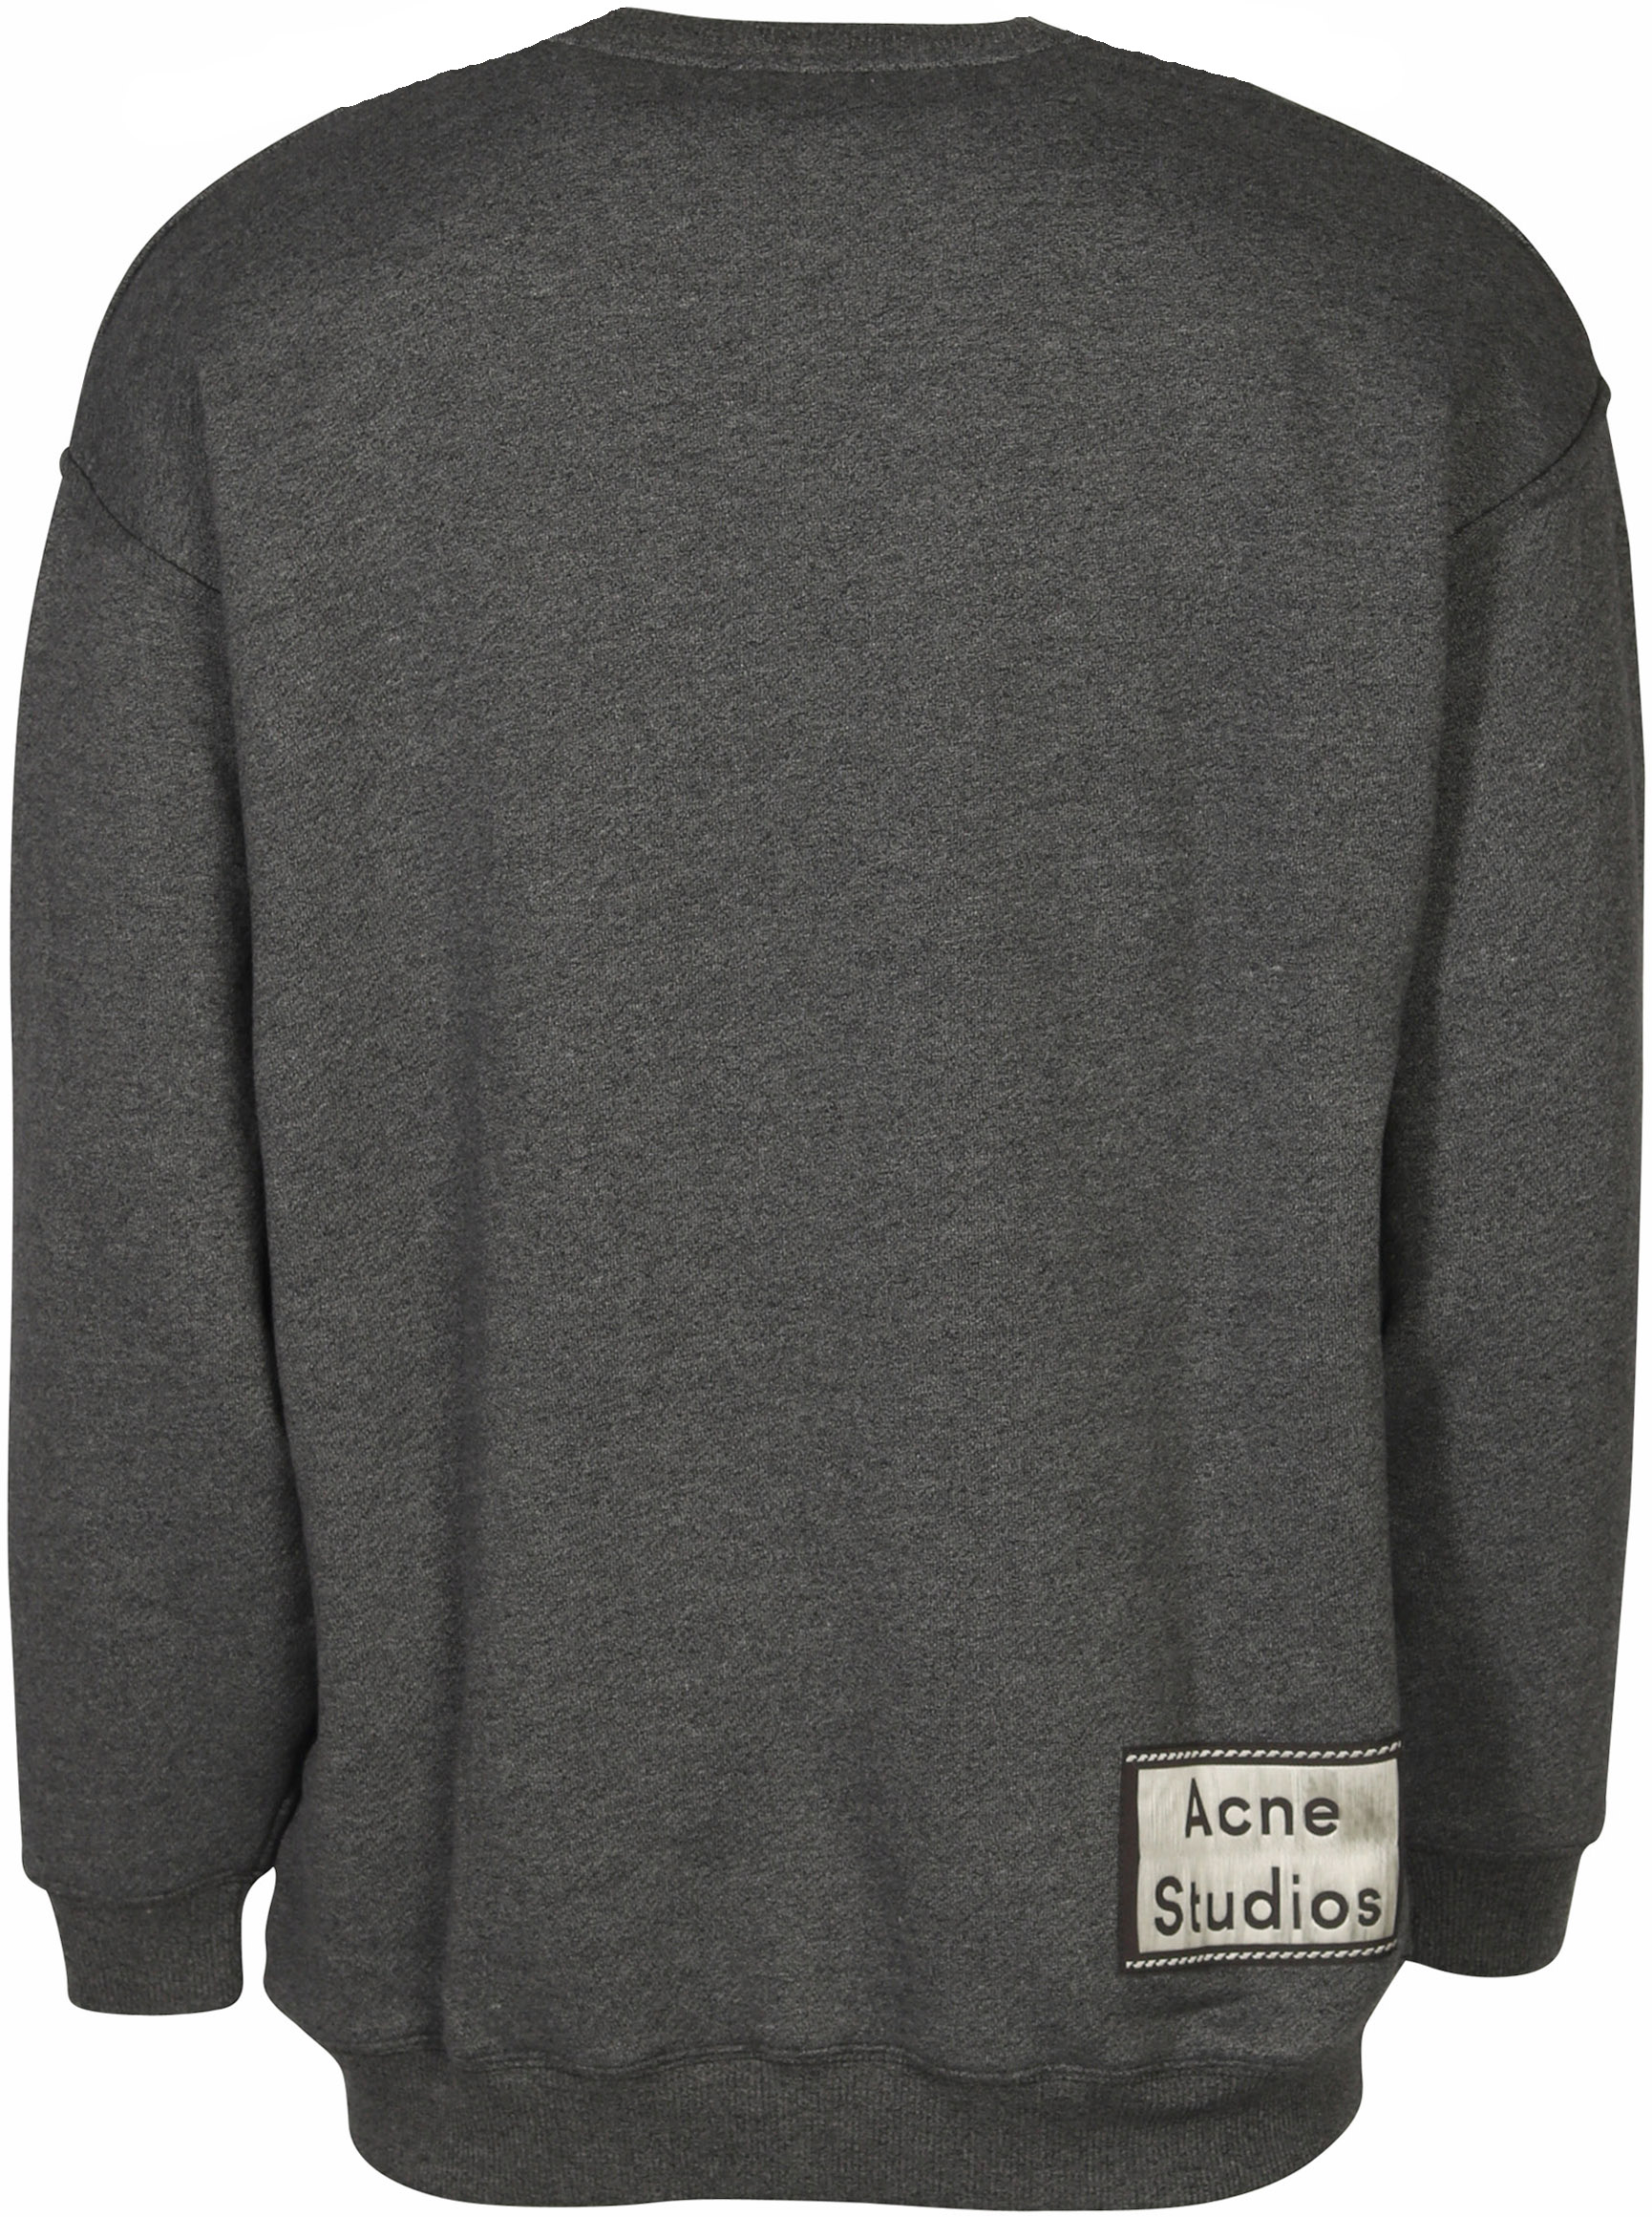 Acne Studios Sweatshirt Fiene Reverse Label Black S